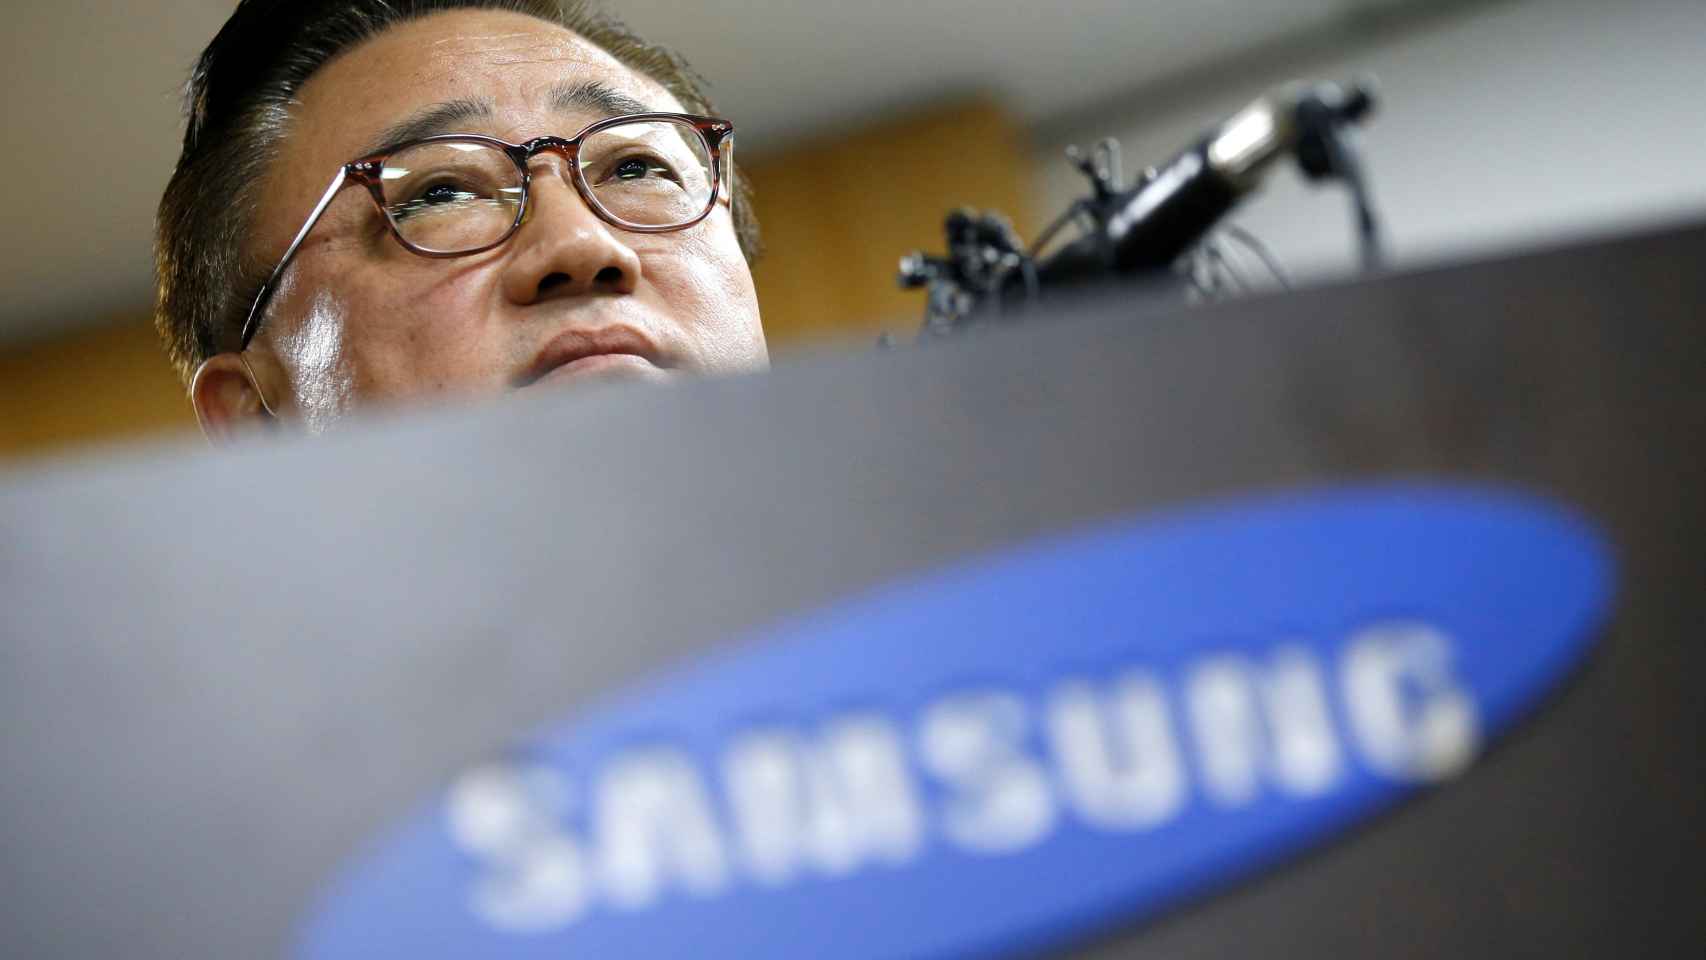 El presidente de Samsung durante la conferencia de prensa ofrecida hoy.